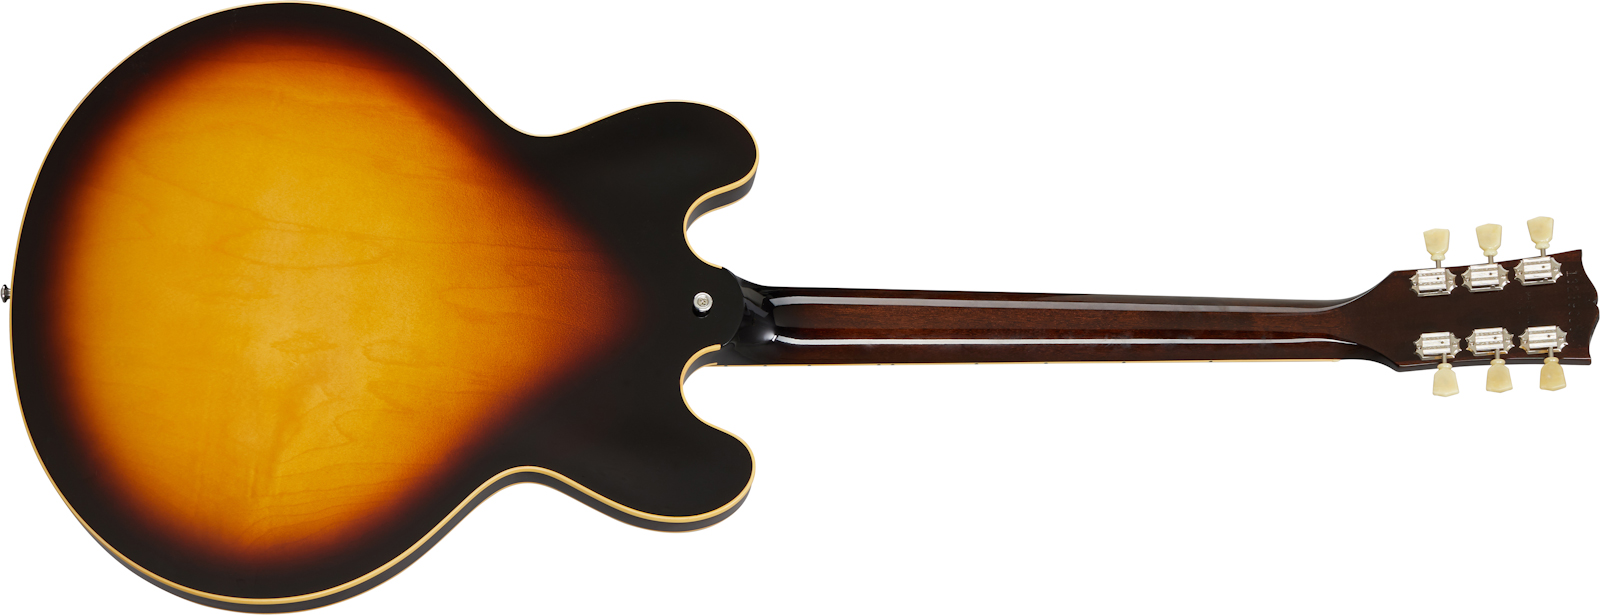 Gibson Es-345 Lh Original Gaucher 2h Ht Rw - Vintage Burst - E-Gitarre für Linkshänder - Variation 1